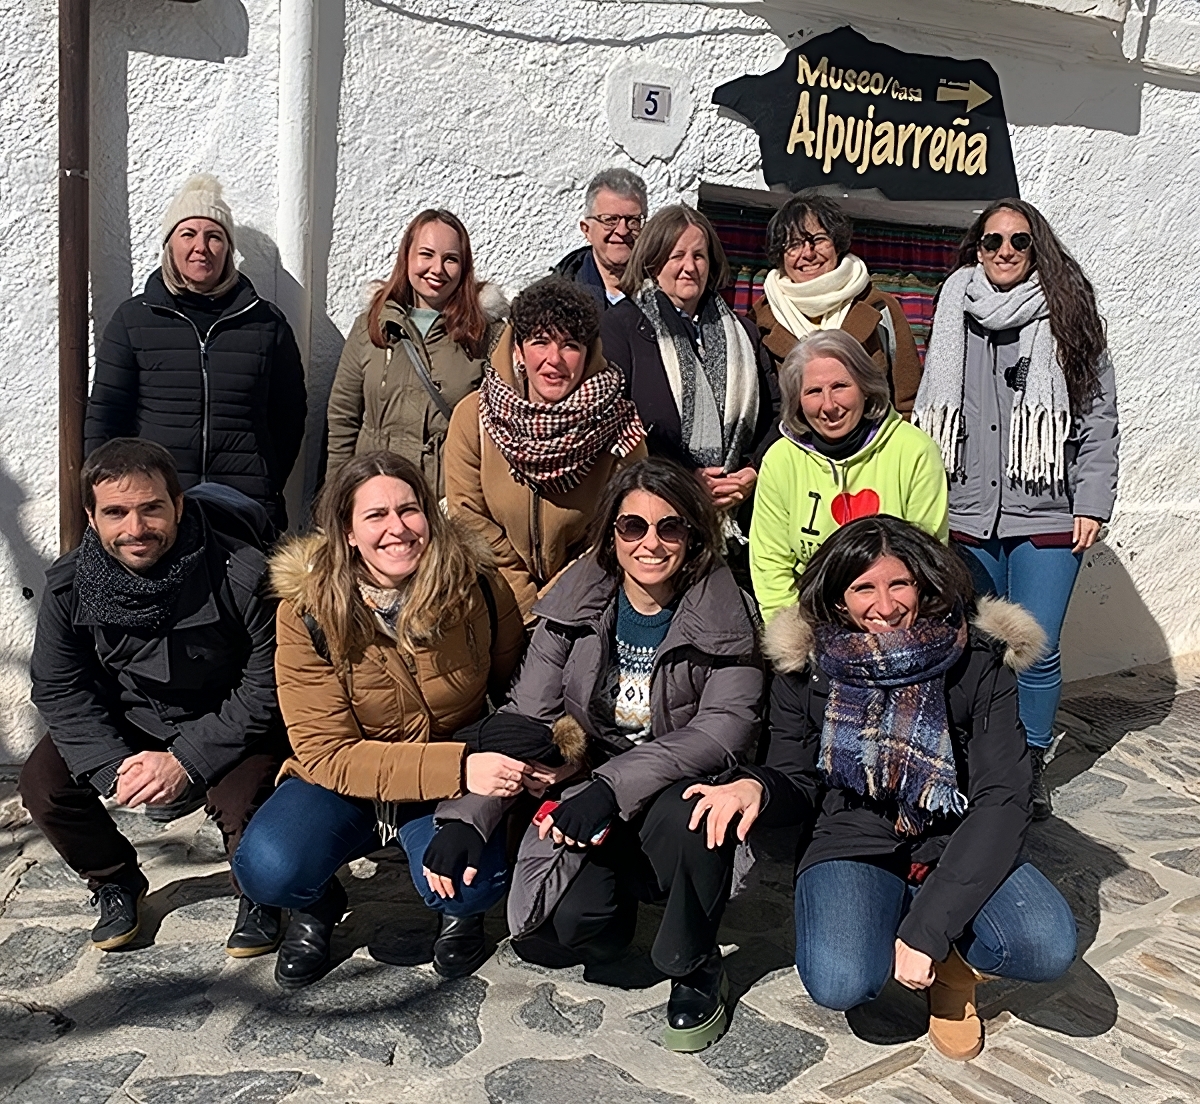 investigadores de la UGR que han coordinado la actualización del Museo Casa Alpujarreña de Bubión